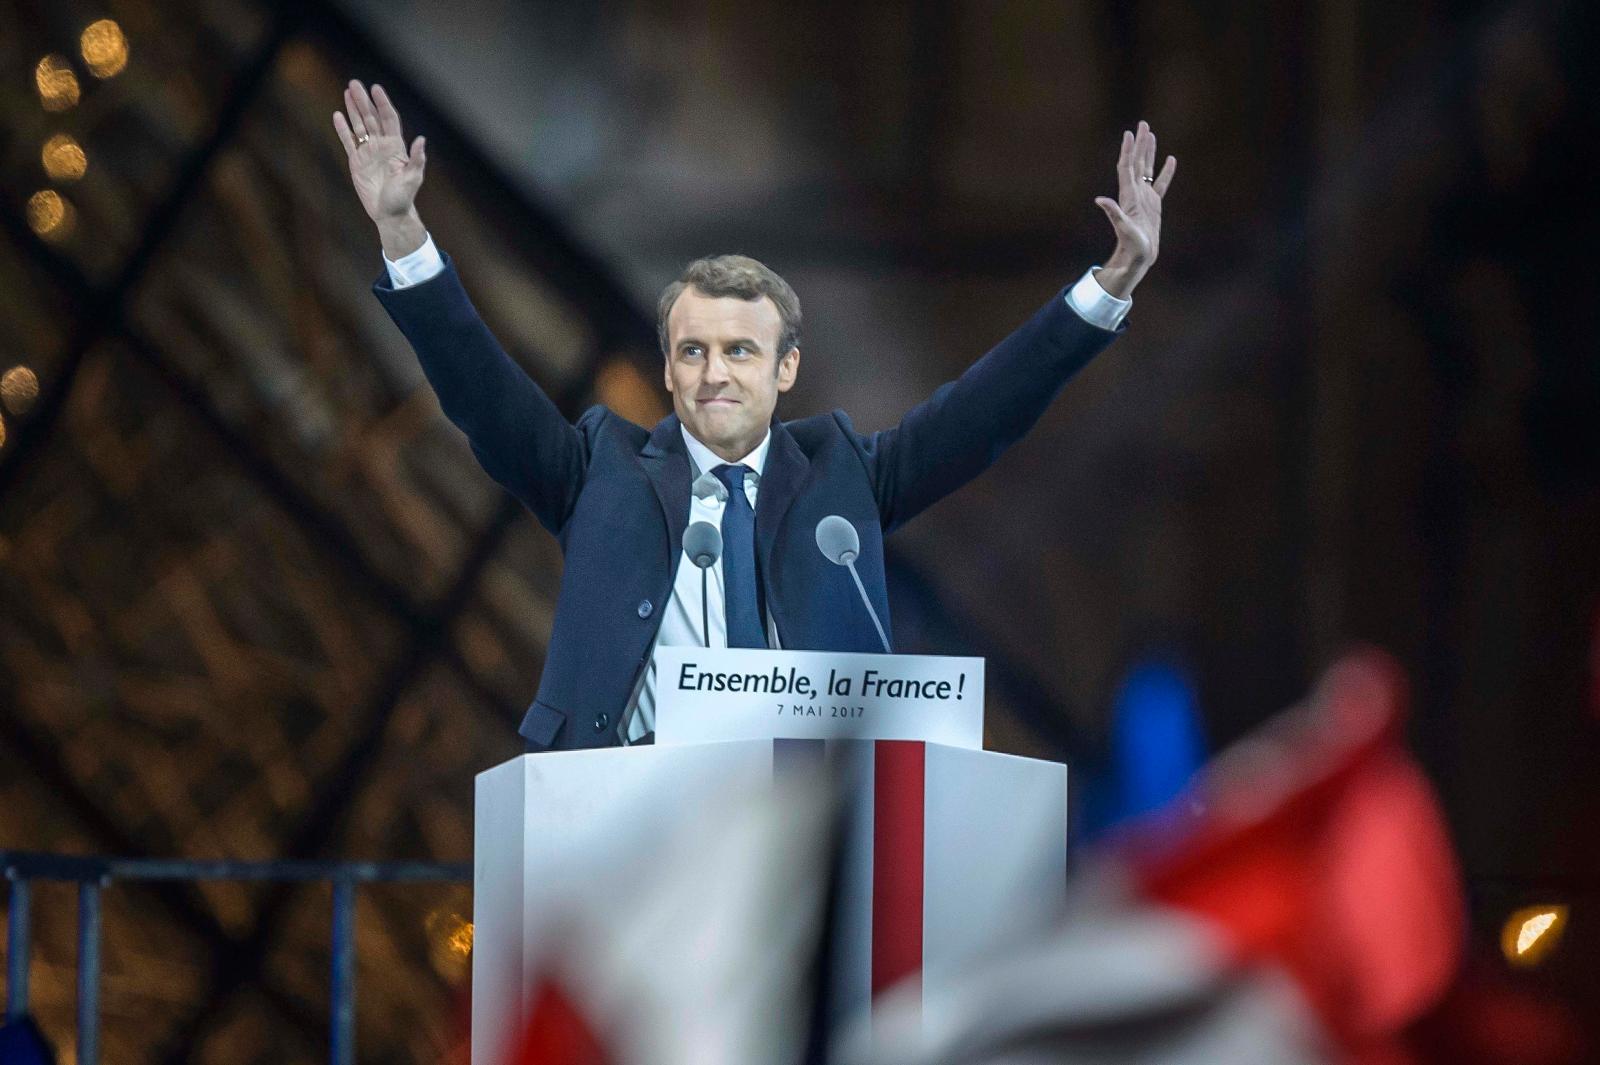  Emmanuel Macron wygrał wybory prezydenckie. Komentarze z Francji, Rosji i USA